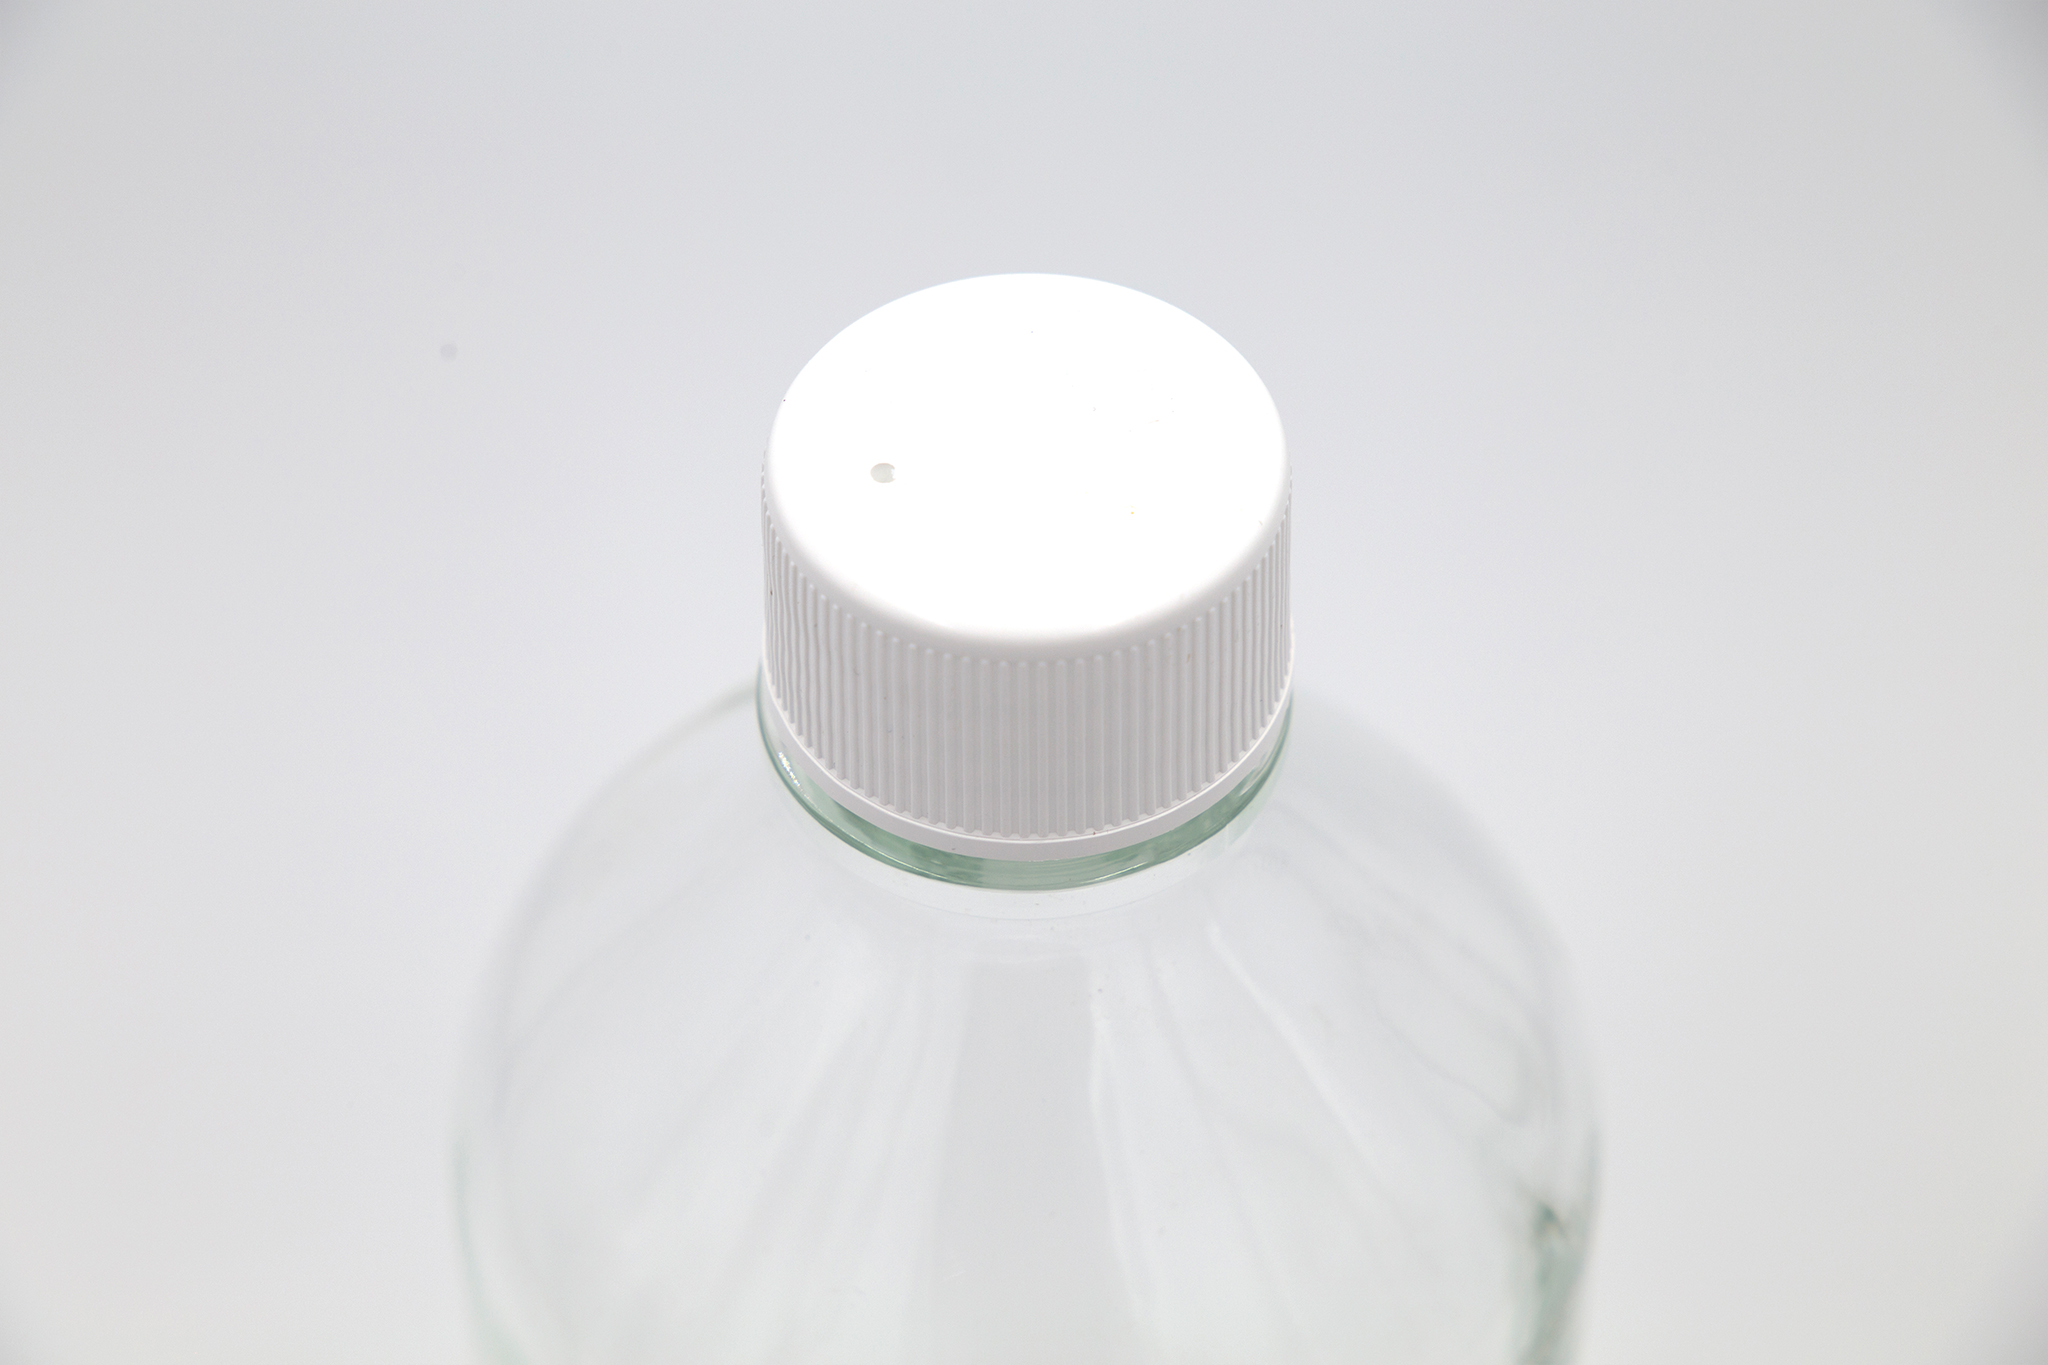 White cap on glass bottle over white background